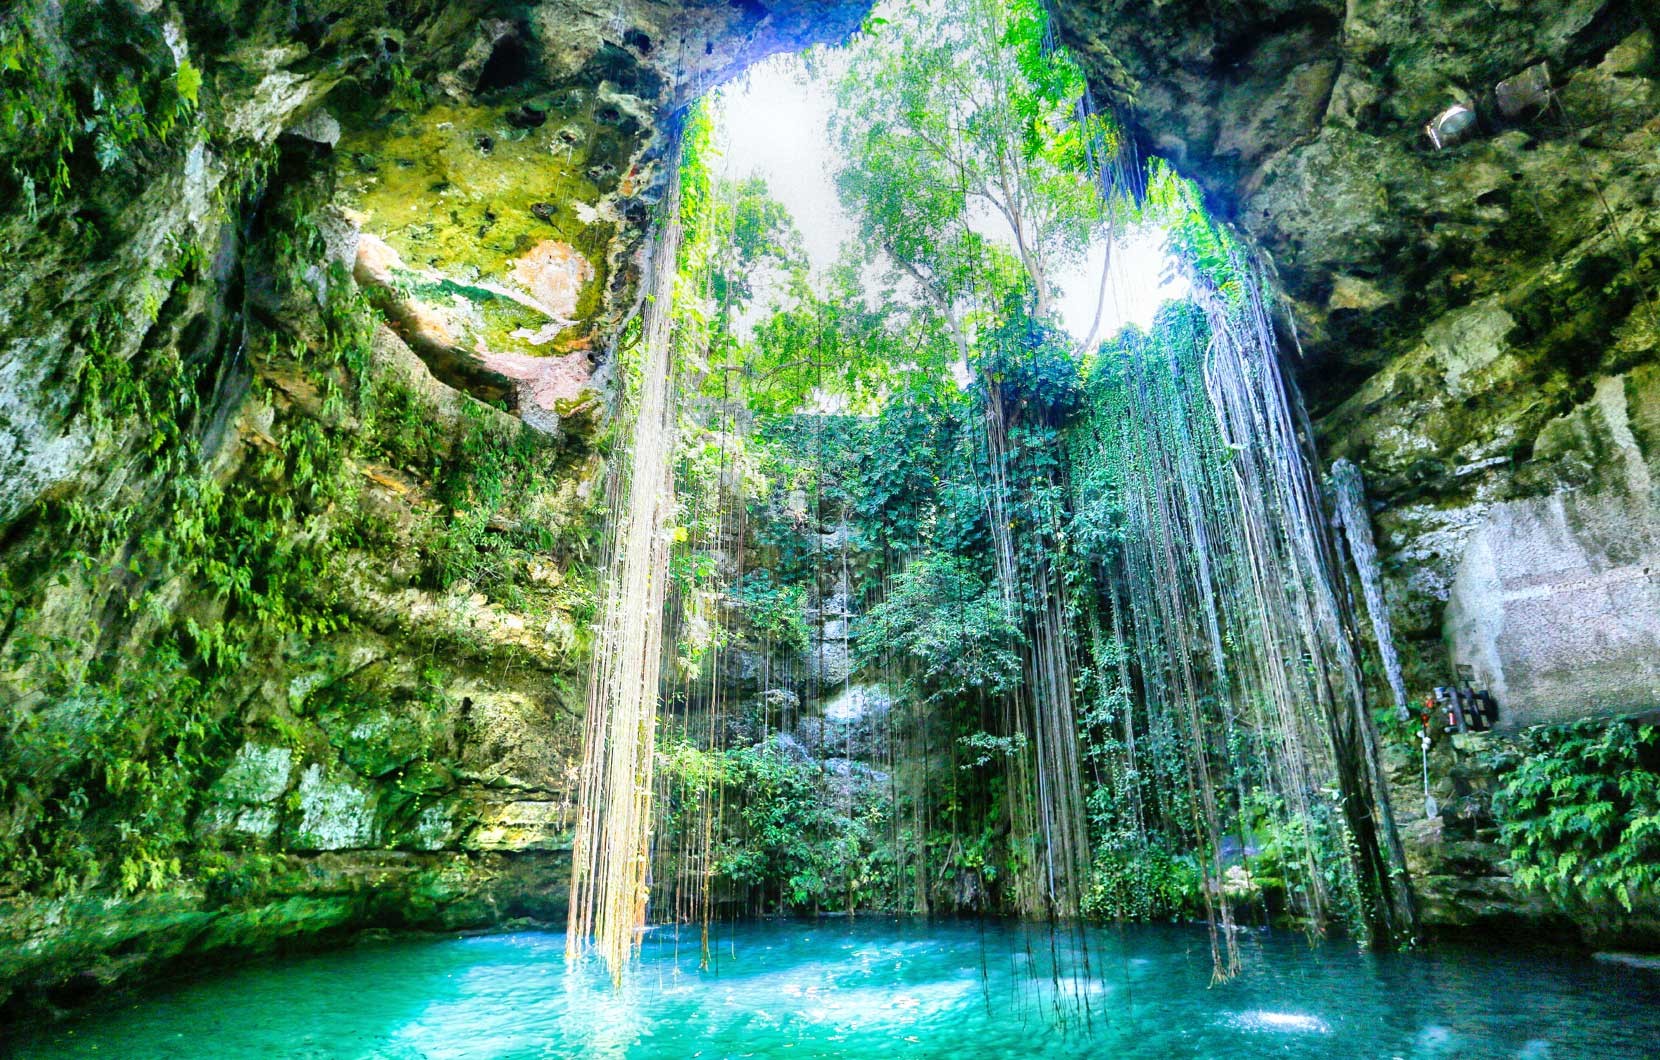 【墨国风采】玛雅的地底之谜—“天坑双眸”Cenote Dos Ojos